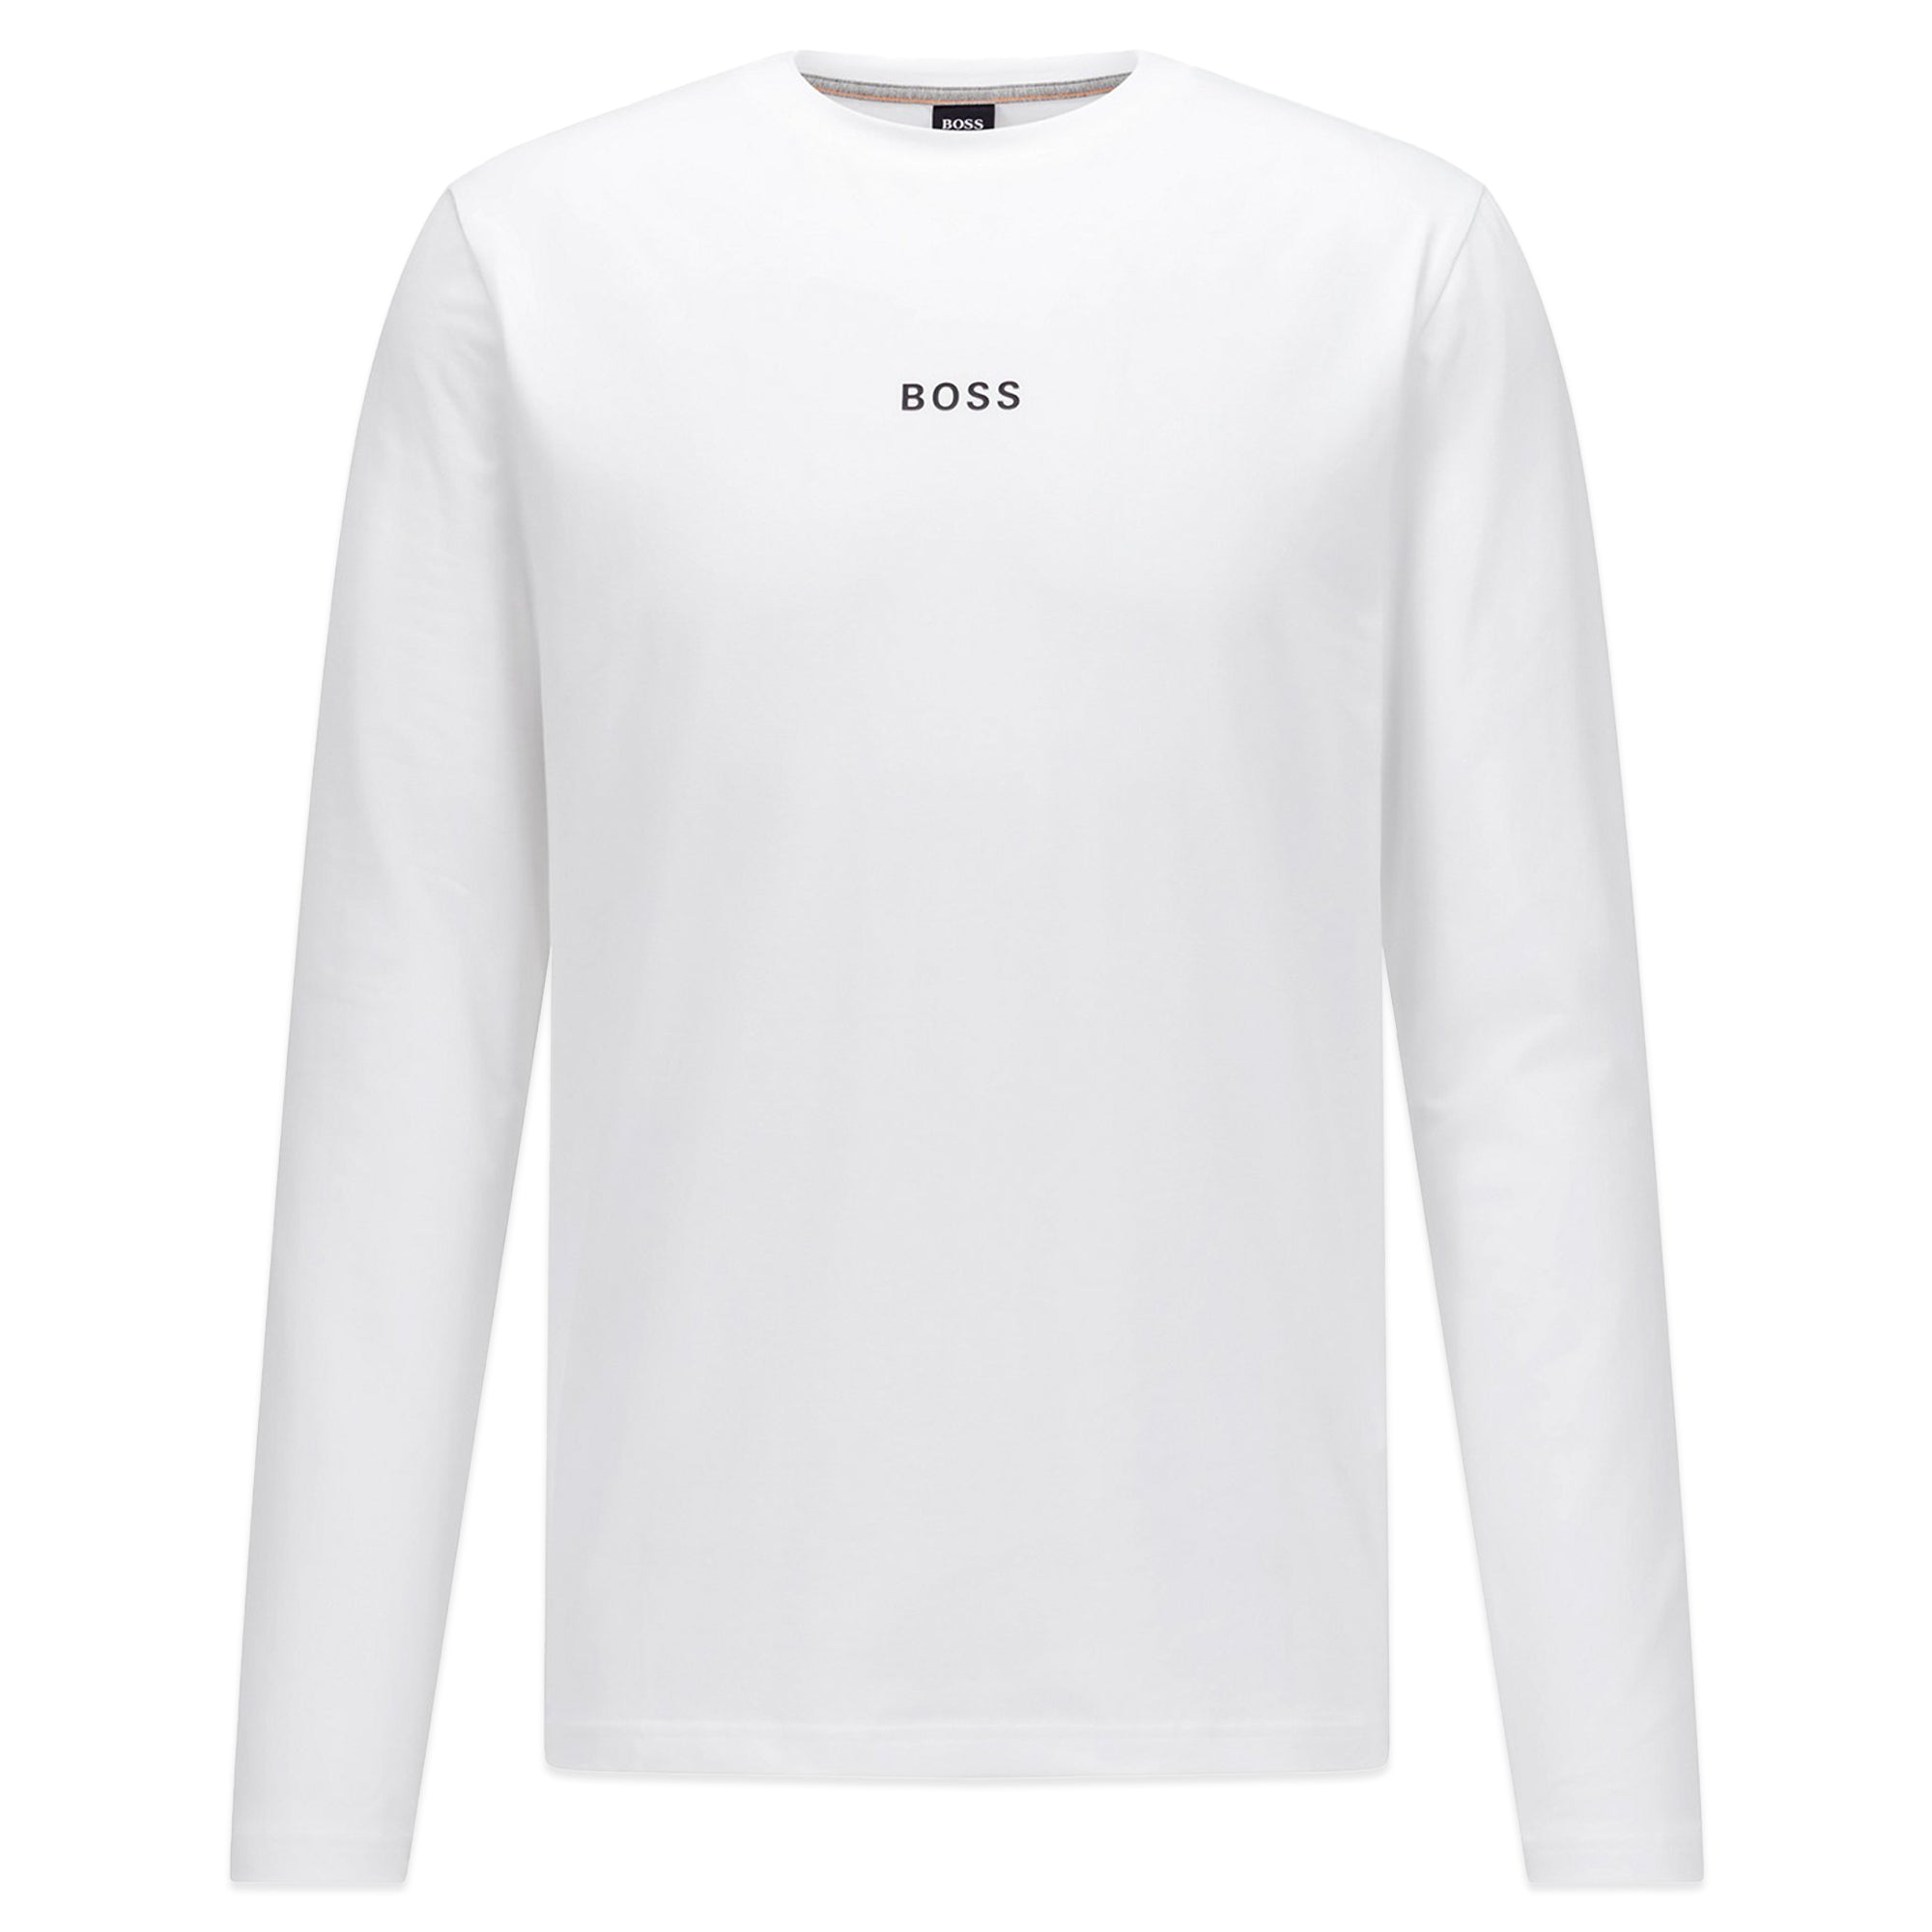 Boss TChark 1 Long Sleeve T-Shirt - White